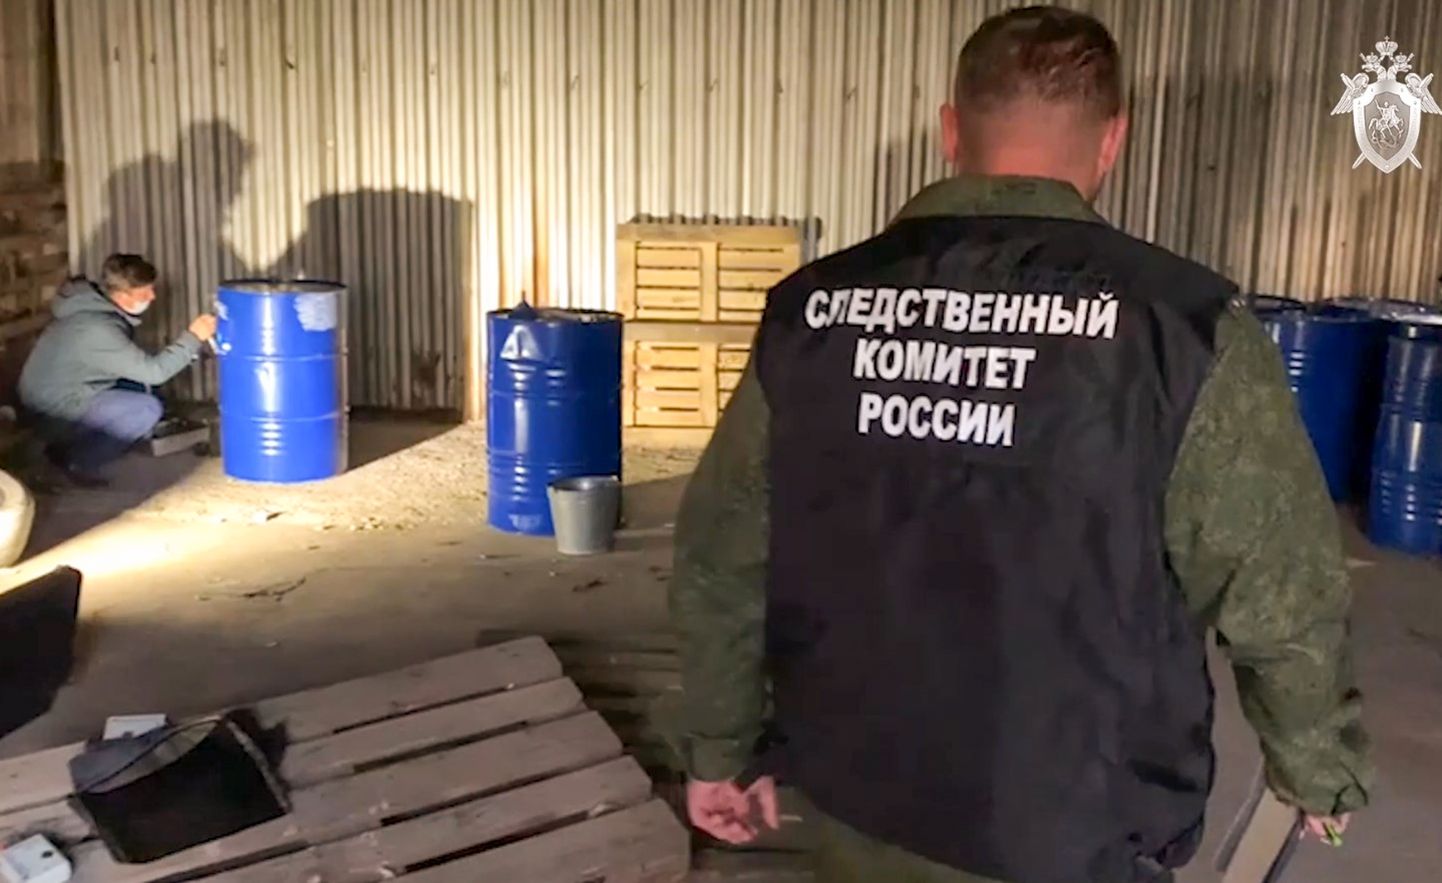 Venemaa uurimiskomitee töötajad likvideerivad salaviinaladu.